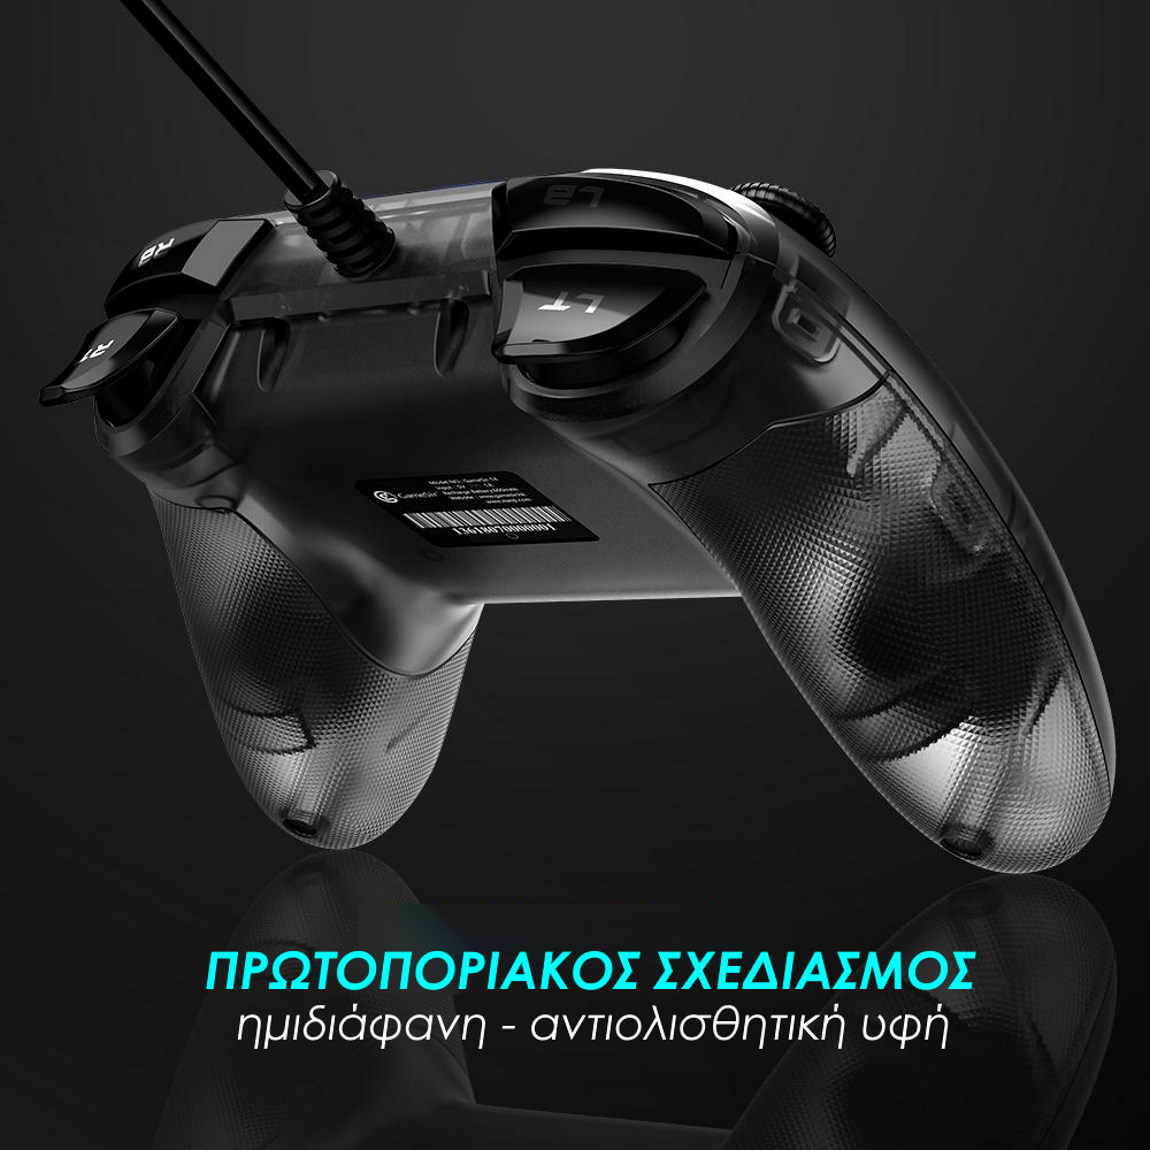 ενσύρματο gaming controller Gamesir T4w ημιδιάφανη αντιολισθητική υφή